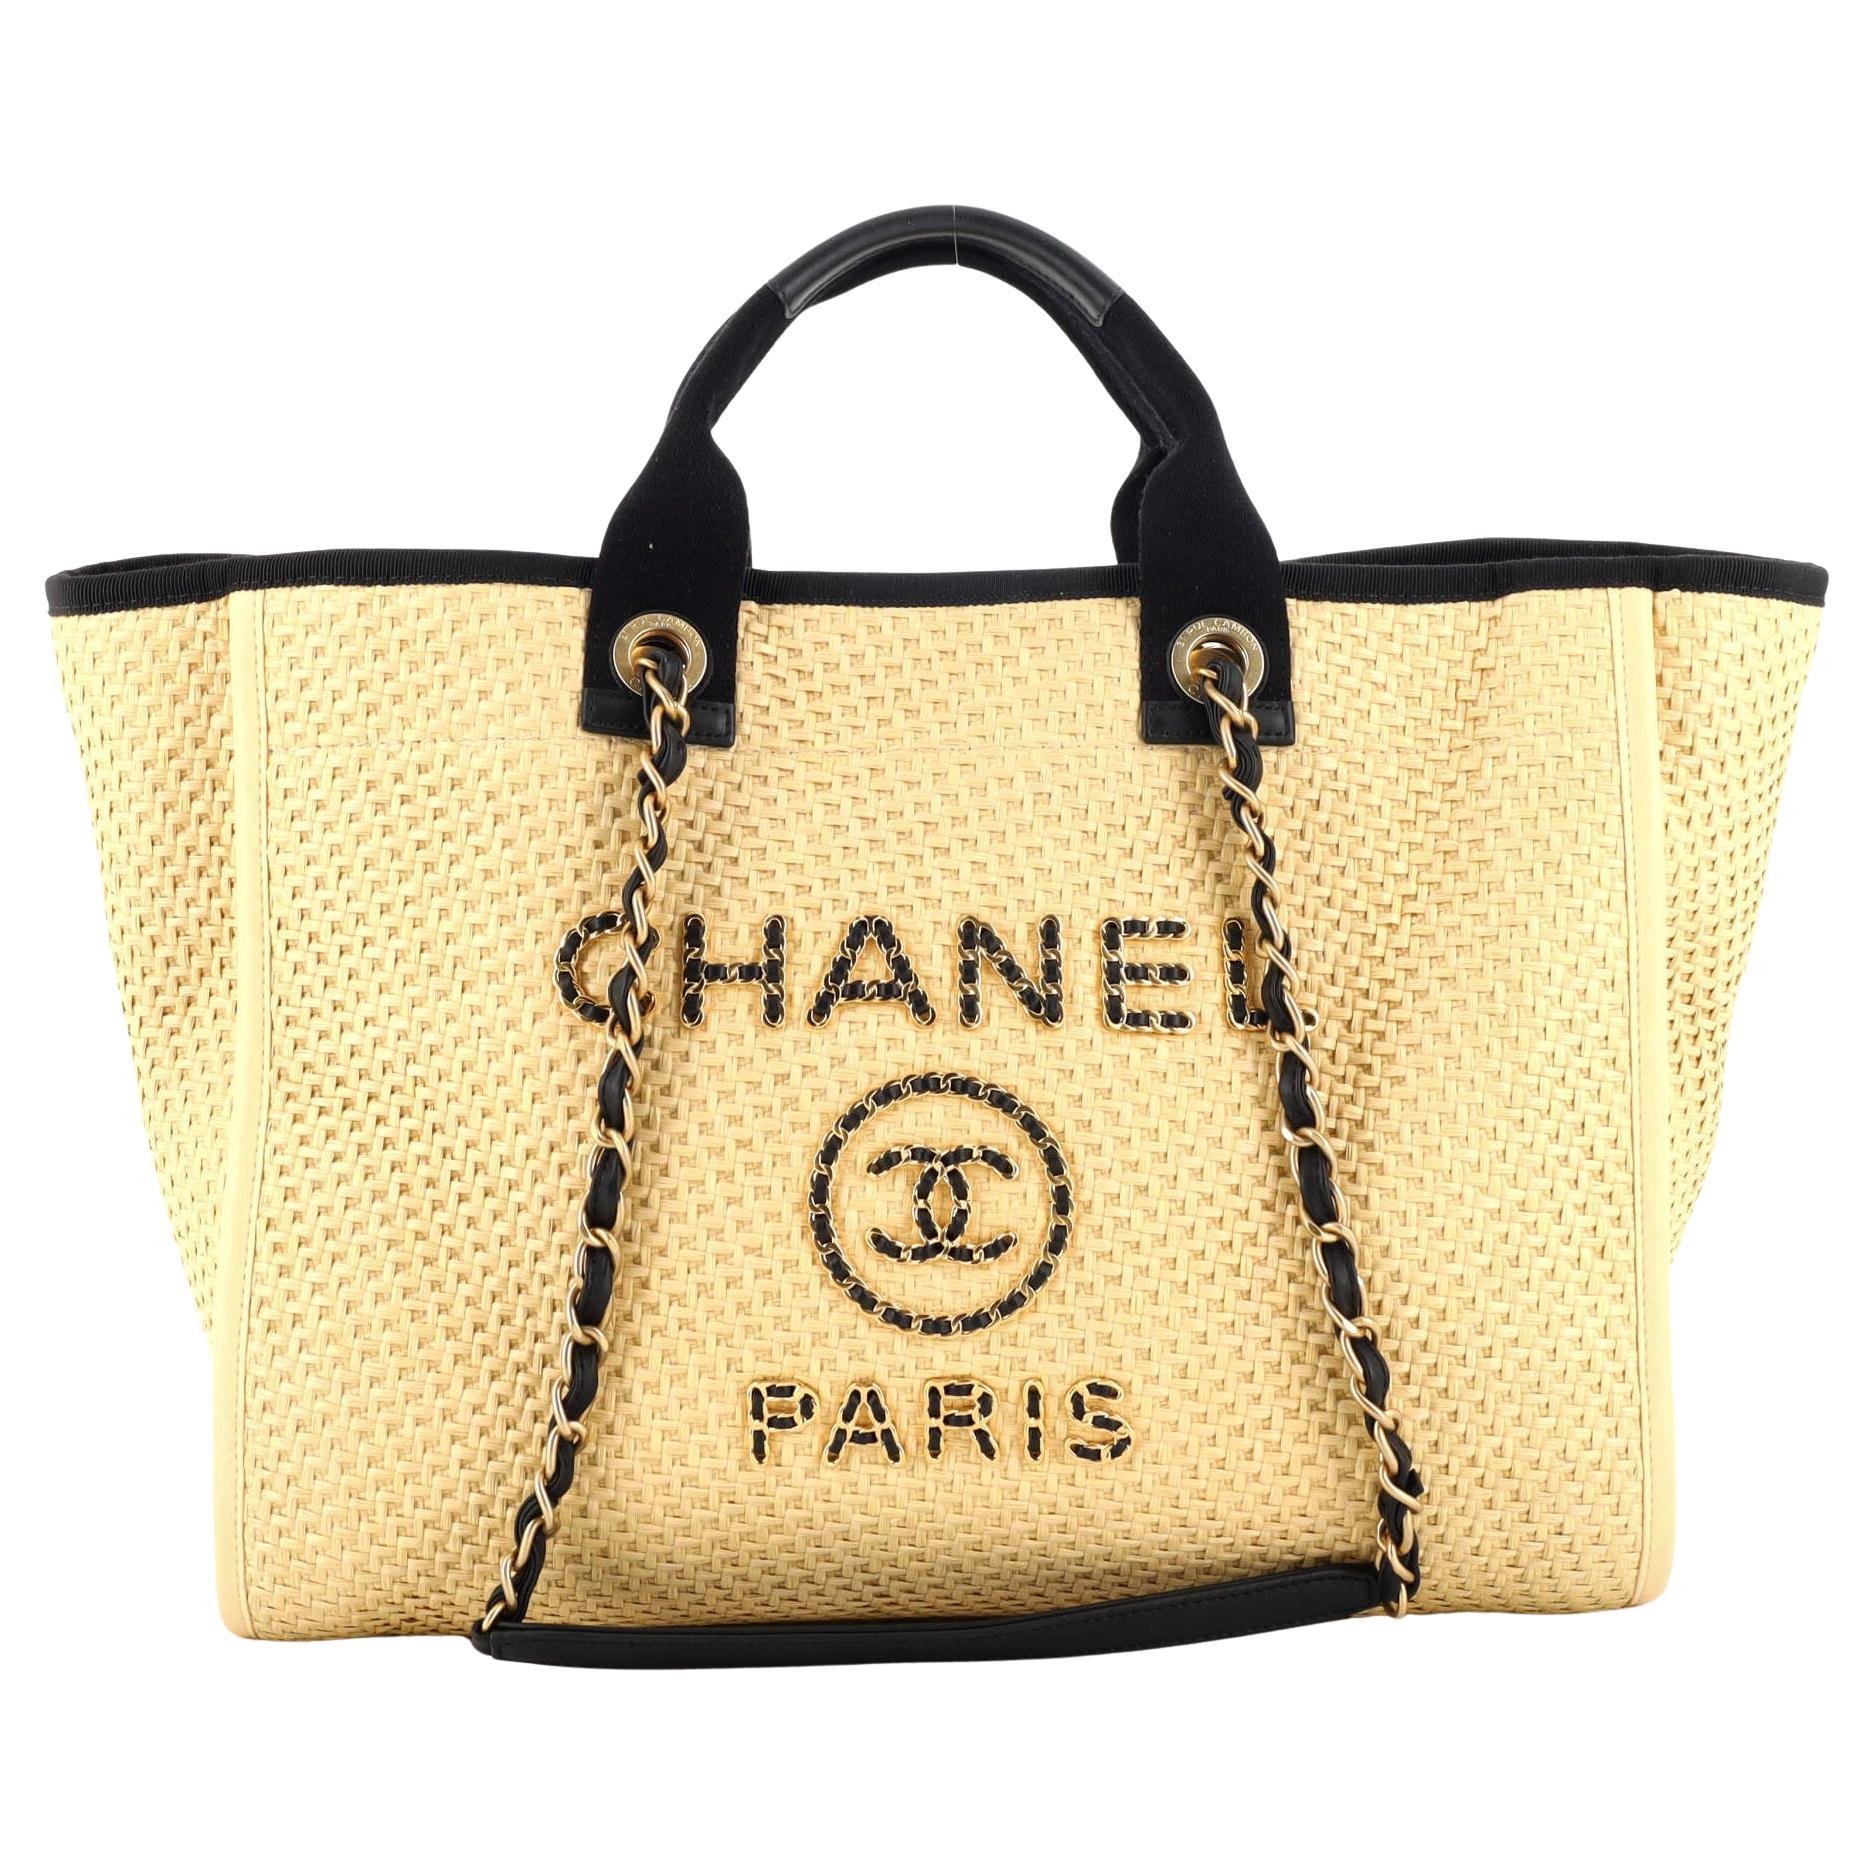 Chanel Straw Handbag - 21 For Sale on 1stDibs  chanel black straw bag,  chanel straw clutch, chanel wicker bag